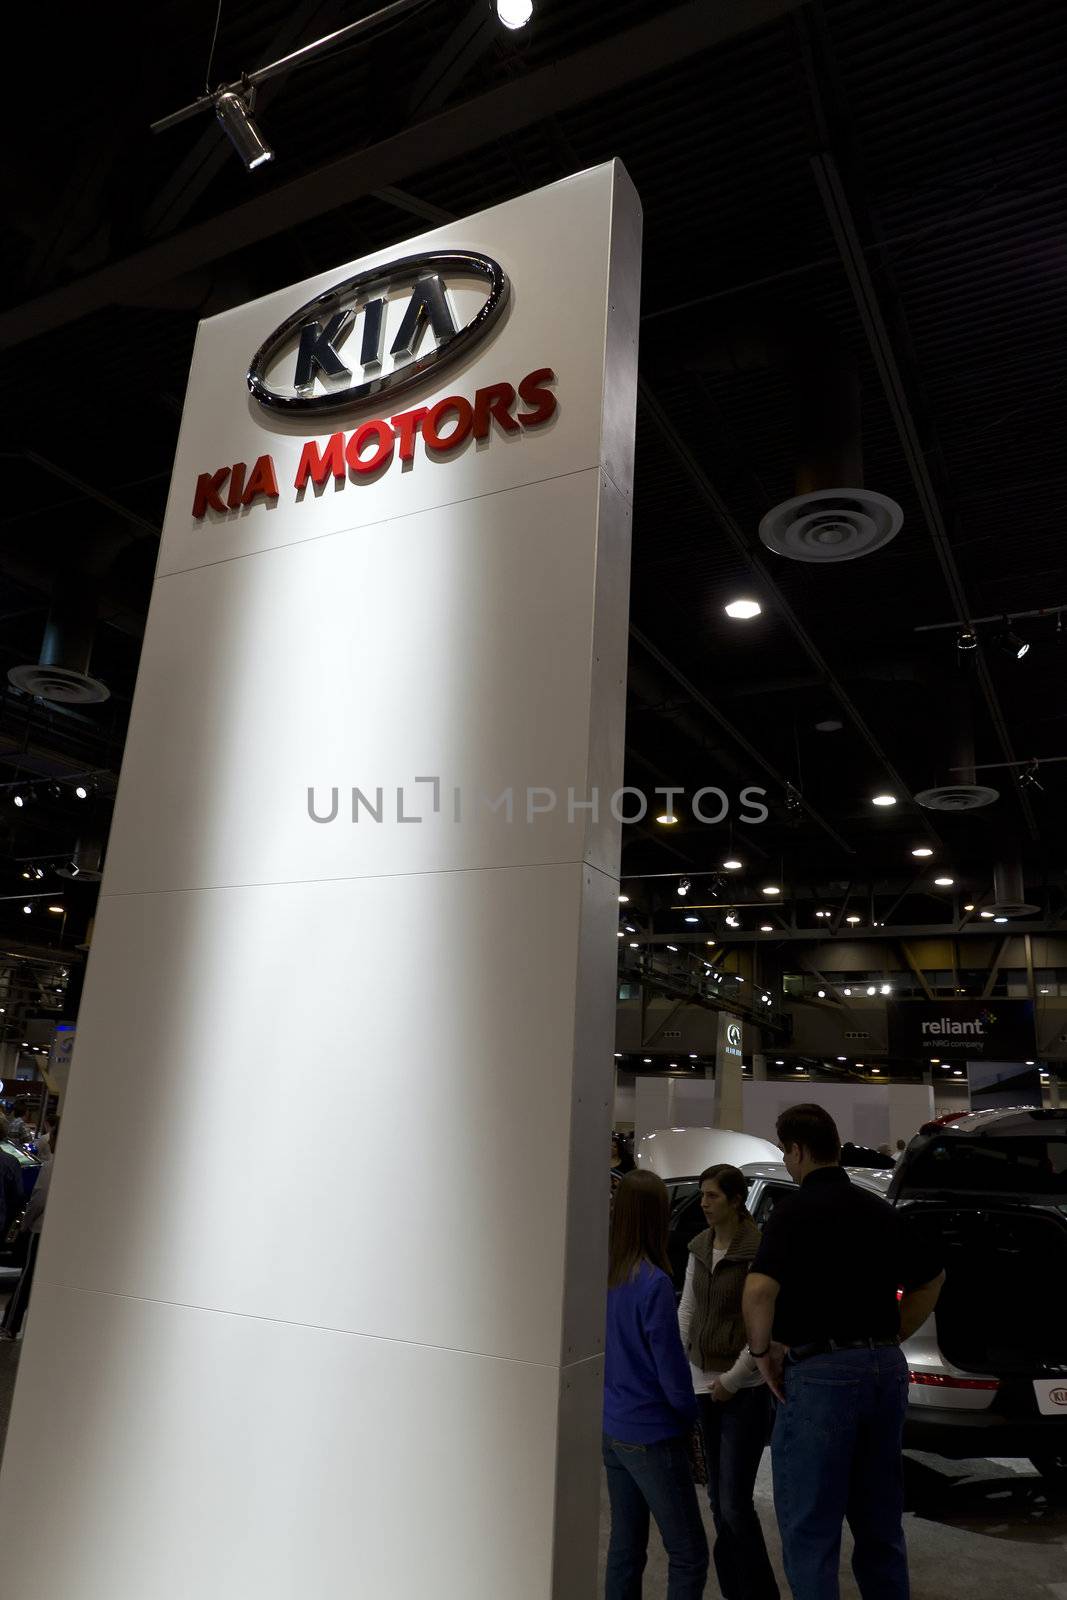 KIA Motors Sign by Moonb007